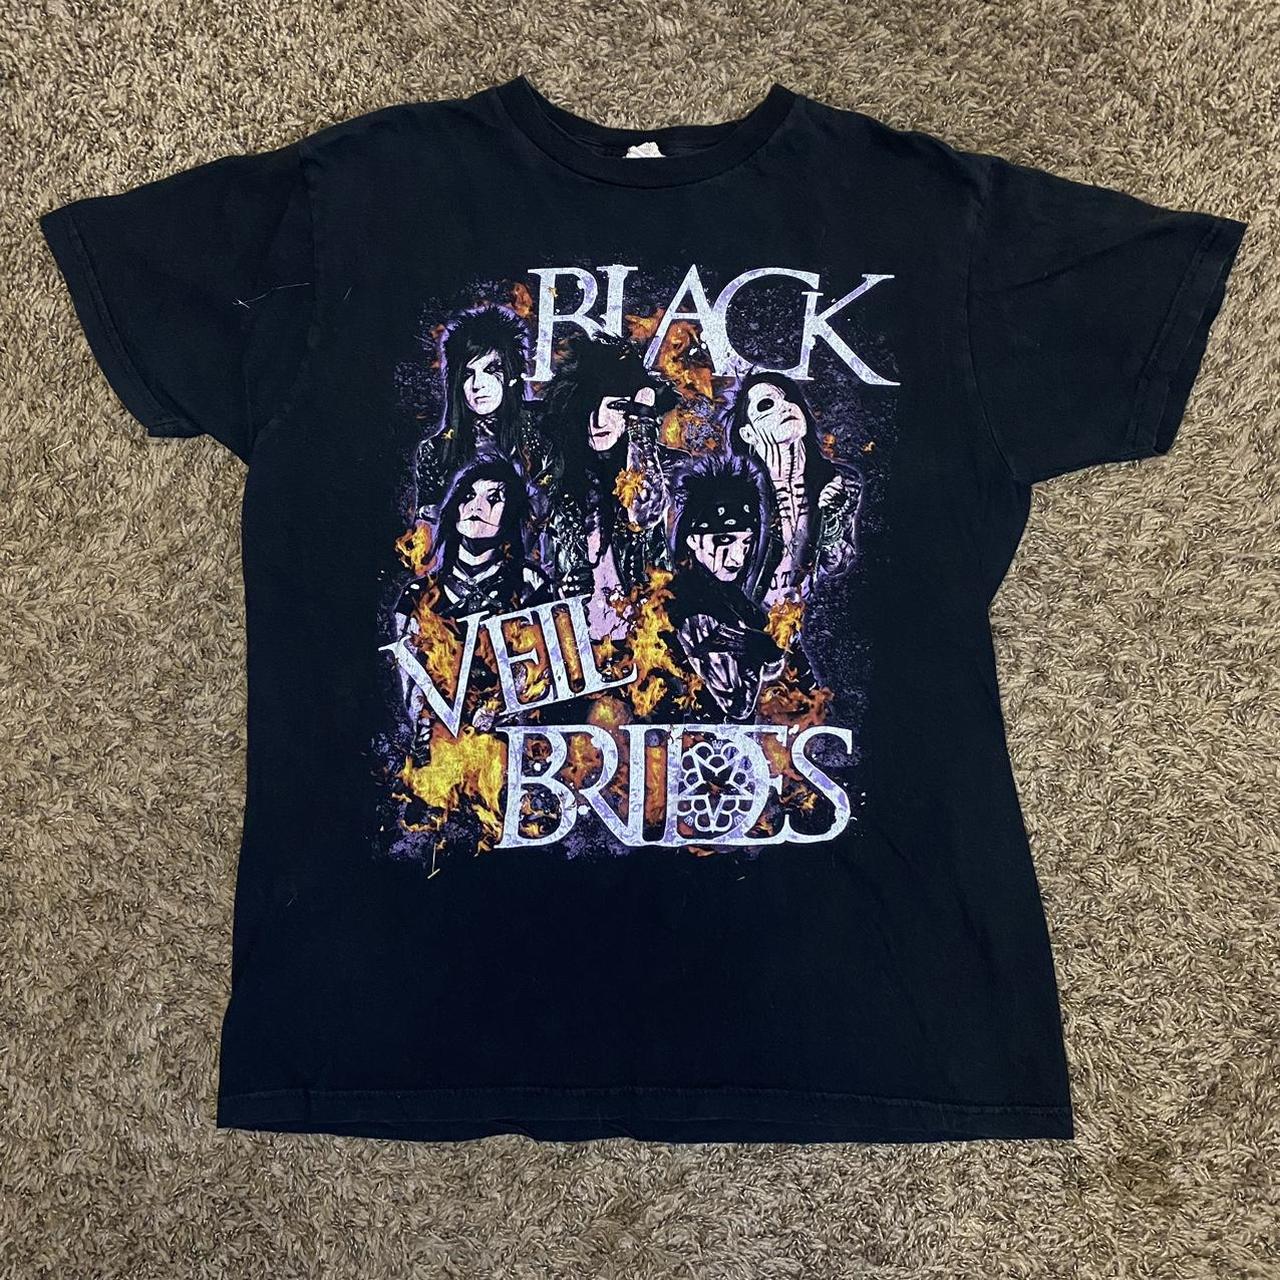 Y2k/mid 2000’s black Black Veil Brides band tee.... - Depop